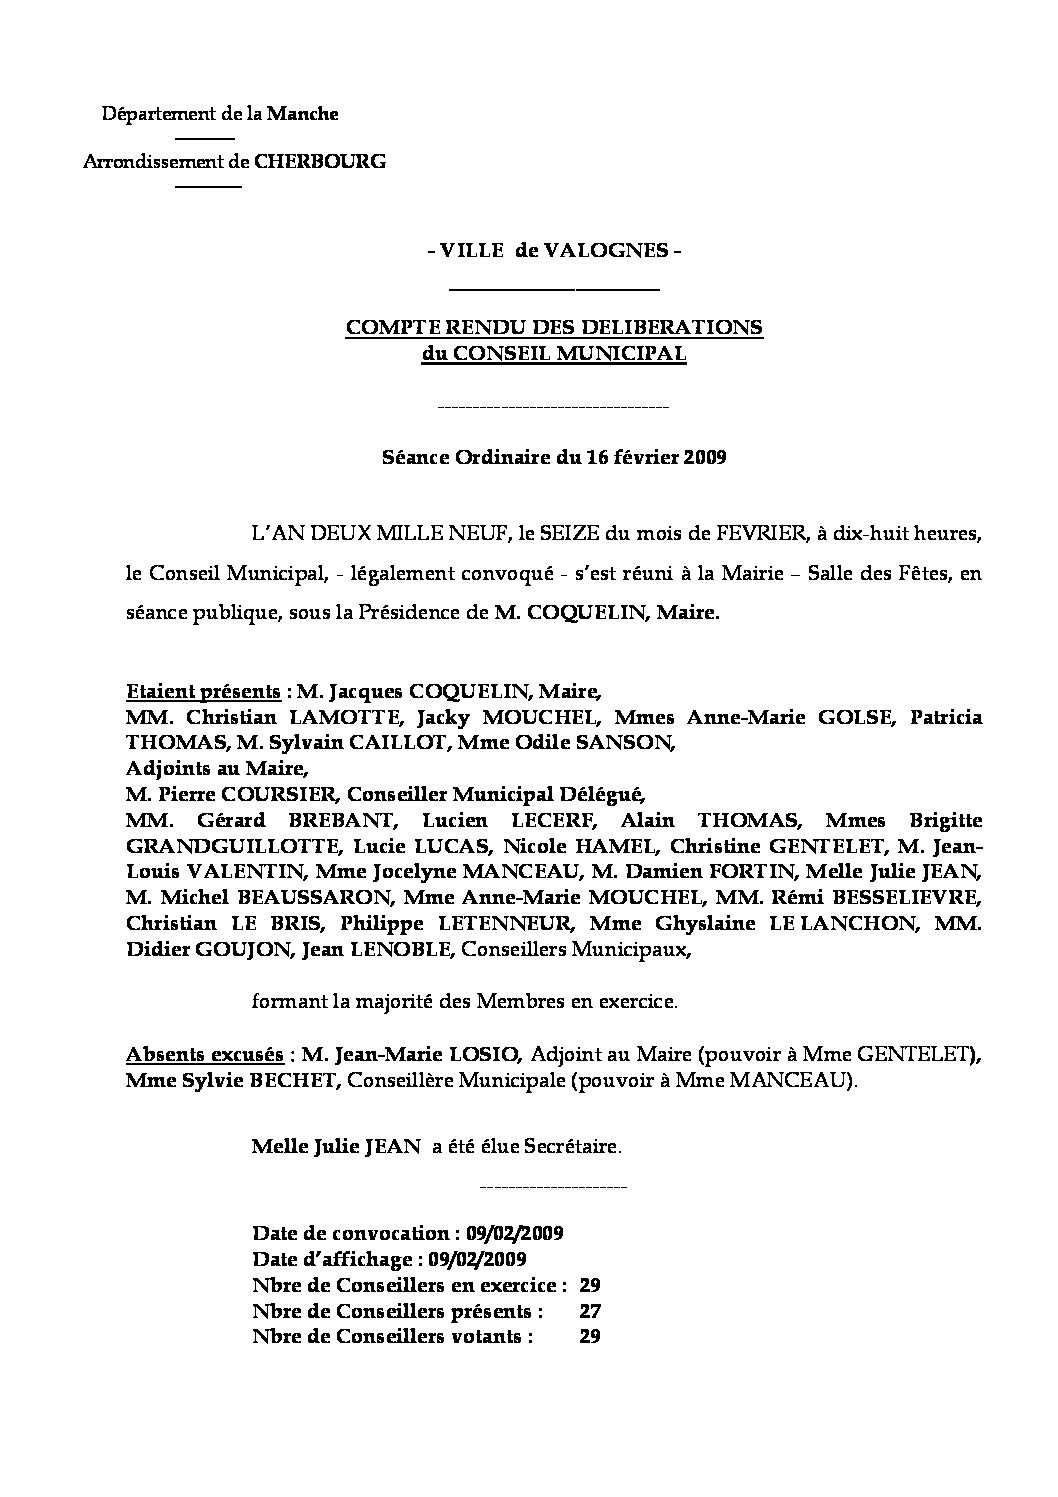 Extrait du registre des délibérations du 29-02-2009 - Compte rendu des questions soumises à délibération lors de la séance du Conseil Municipal du 16 février 2009.